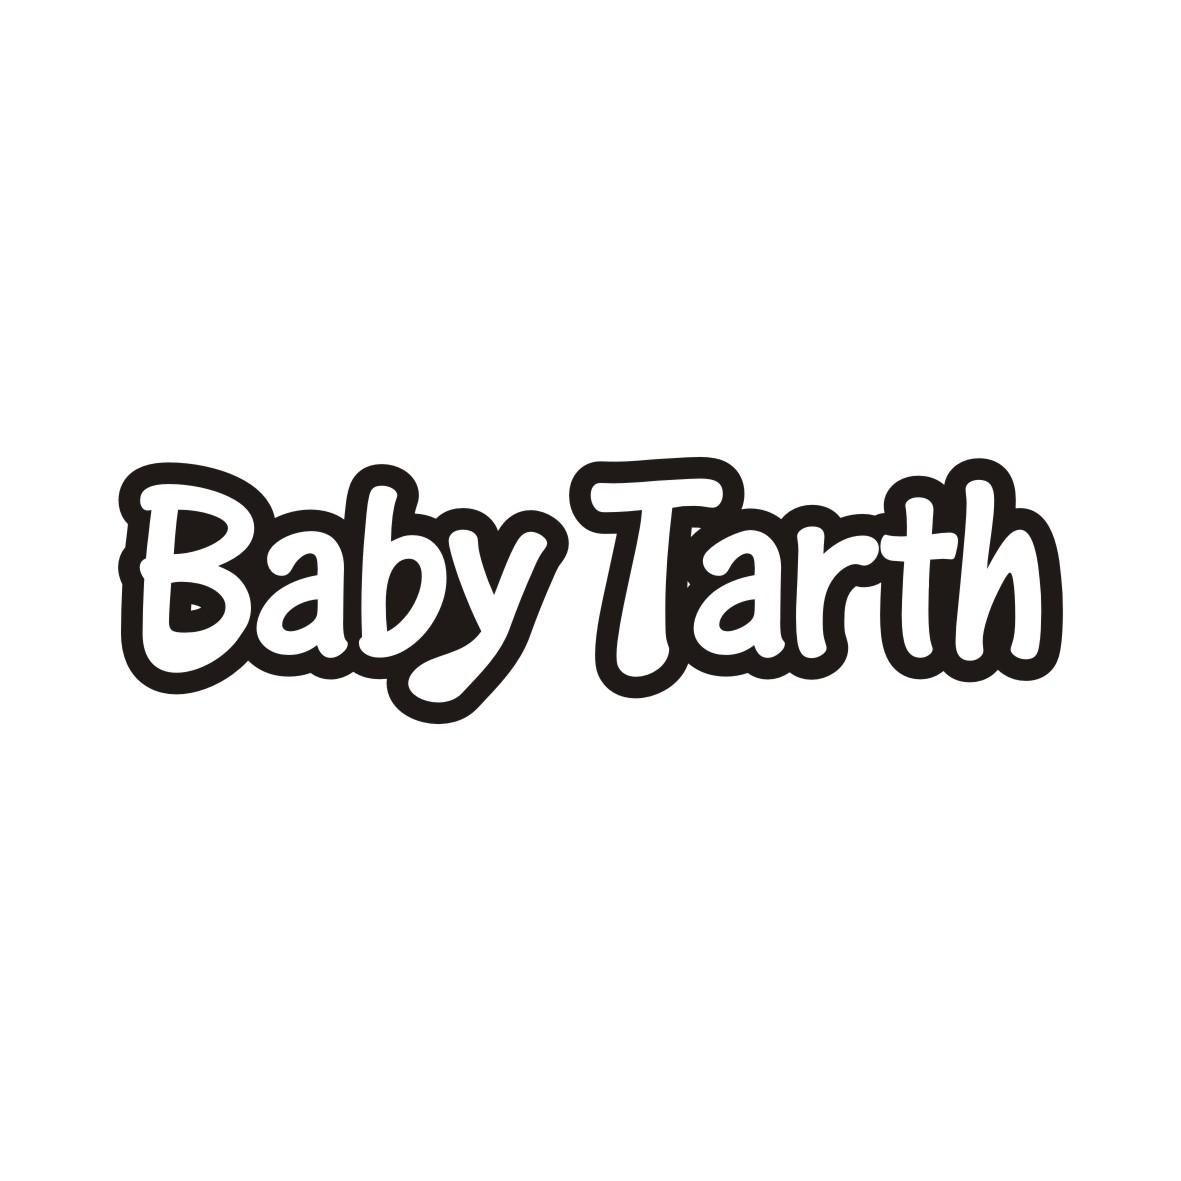 转让商标-BABY TARTH